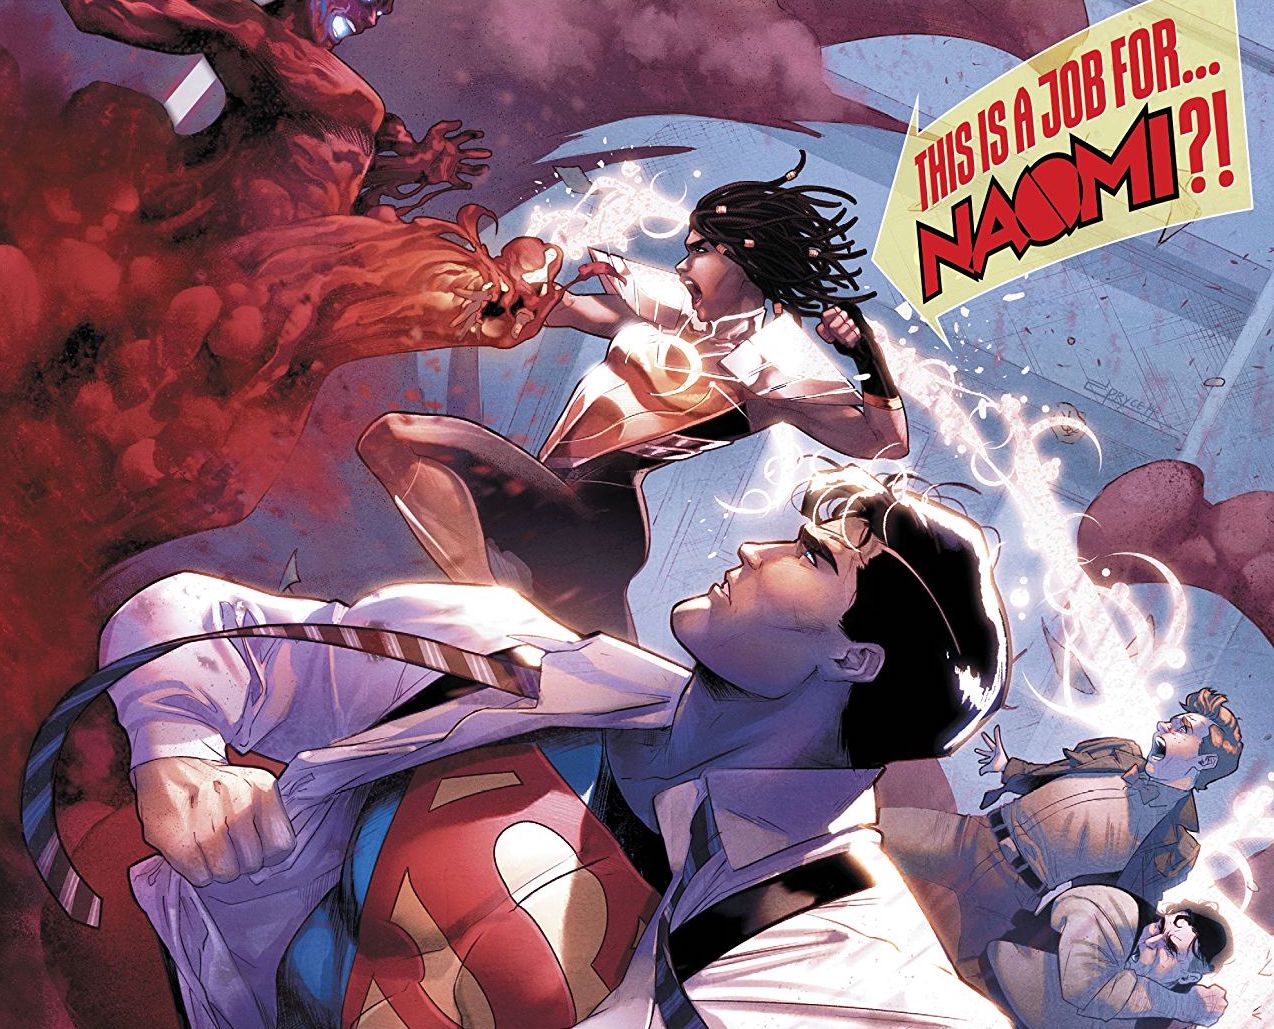 Action Comics #1016 Review: Enter Naomi!